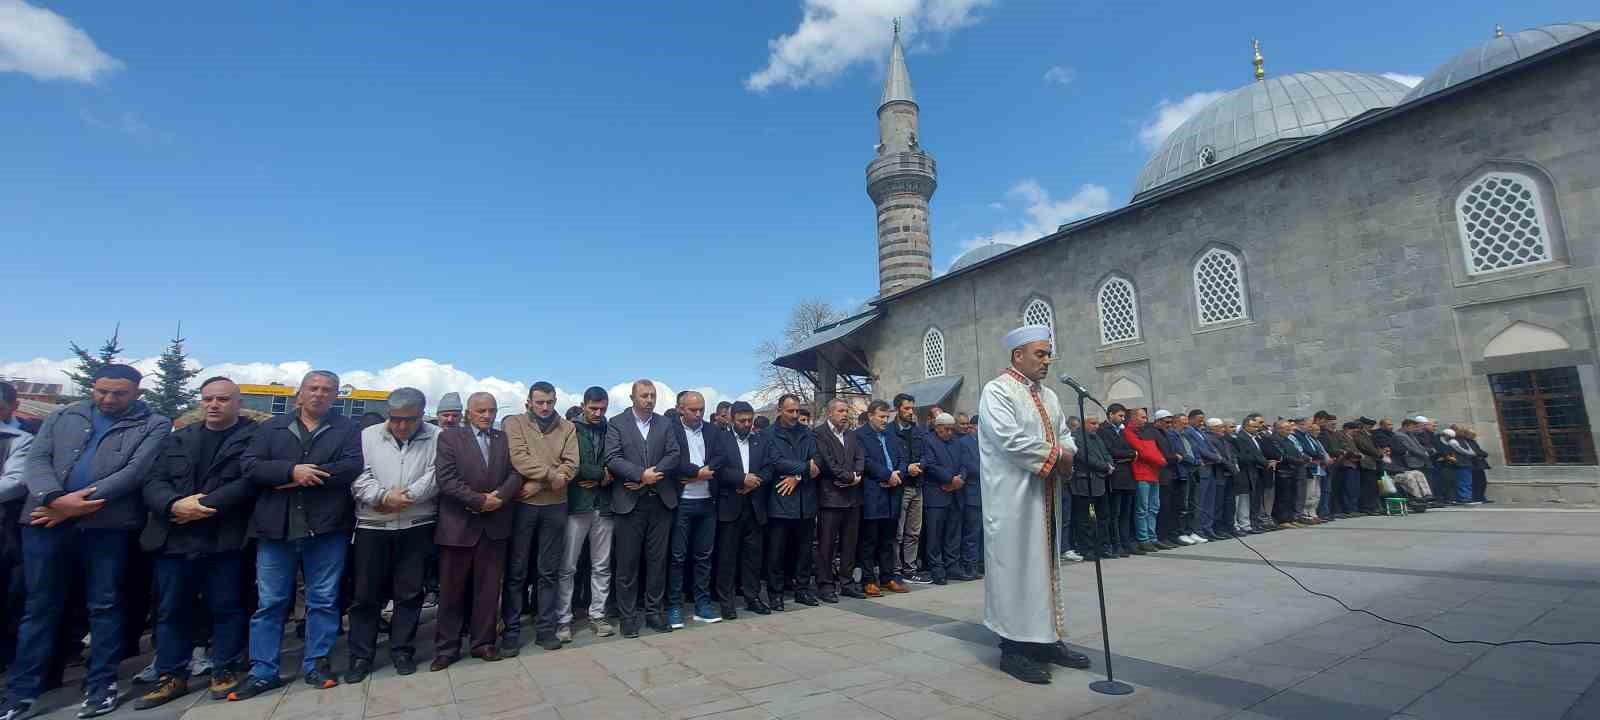 Erzurum’da Gazze şehitleri için gıyabi cenaze namazı kılındı